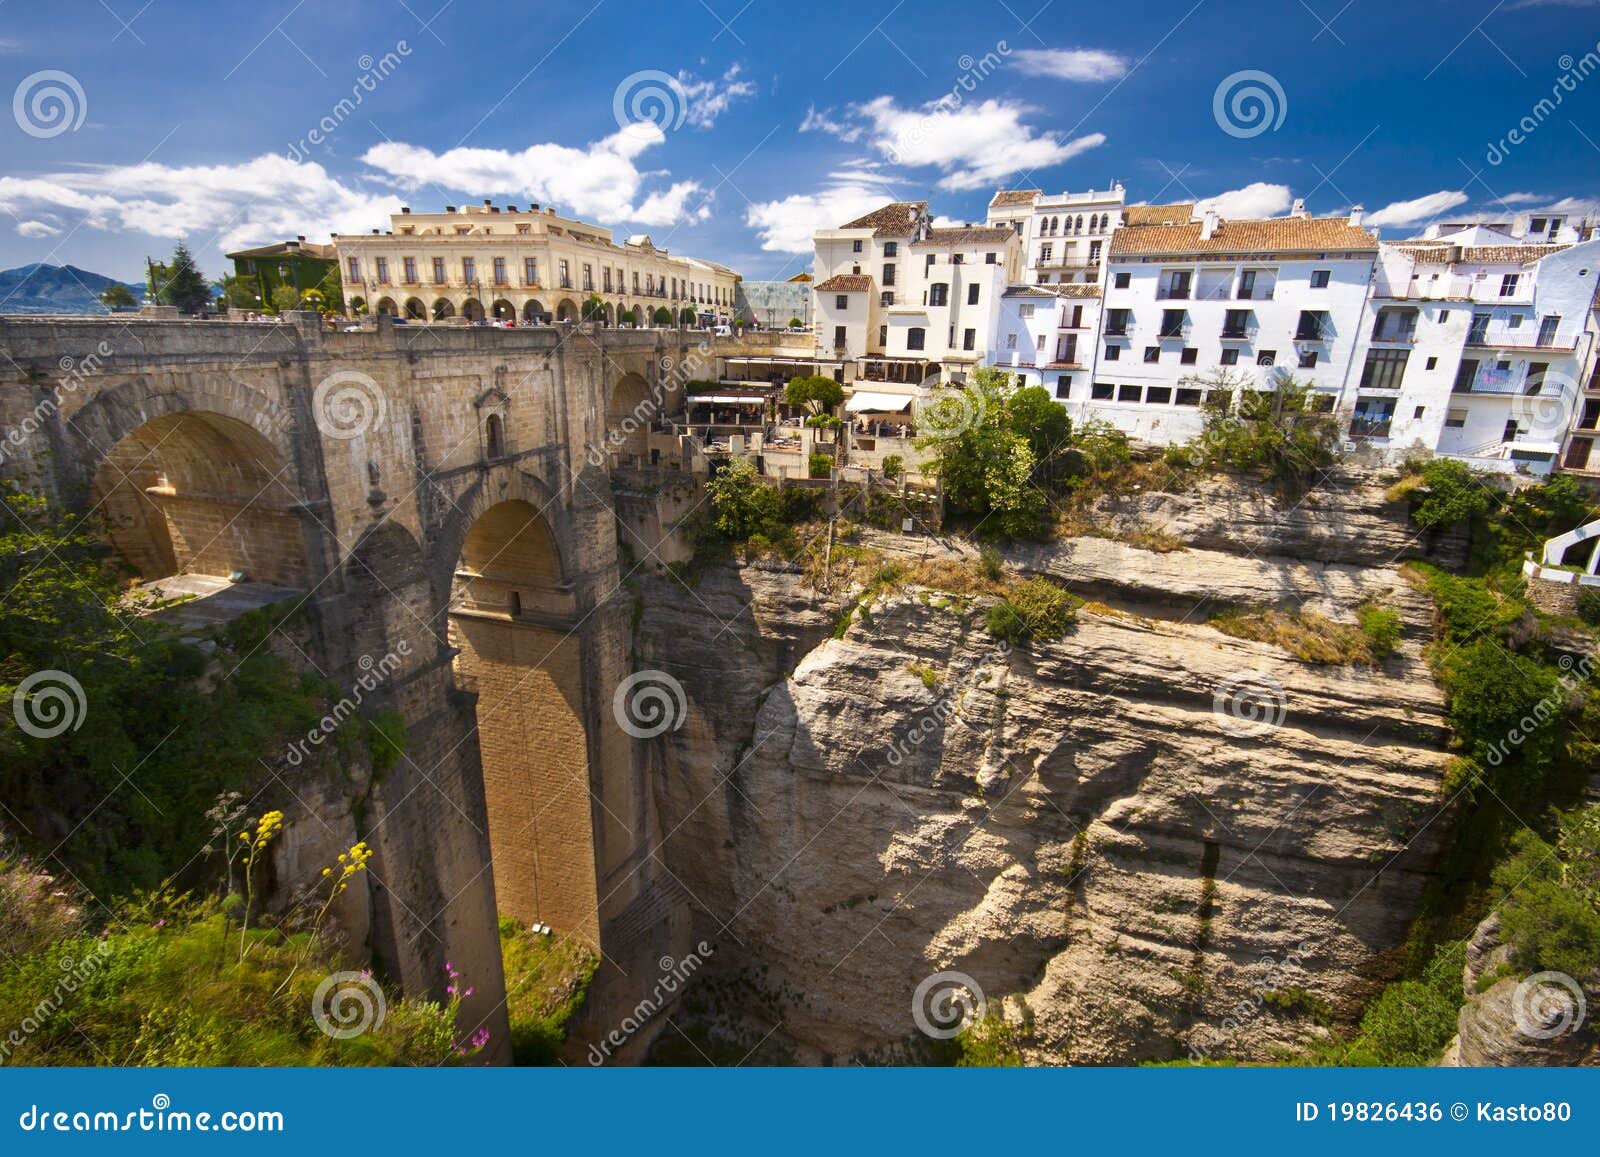 Image libre de droits: Vue panoramique de Ronda, Andalousie, Espagne